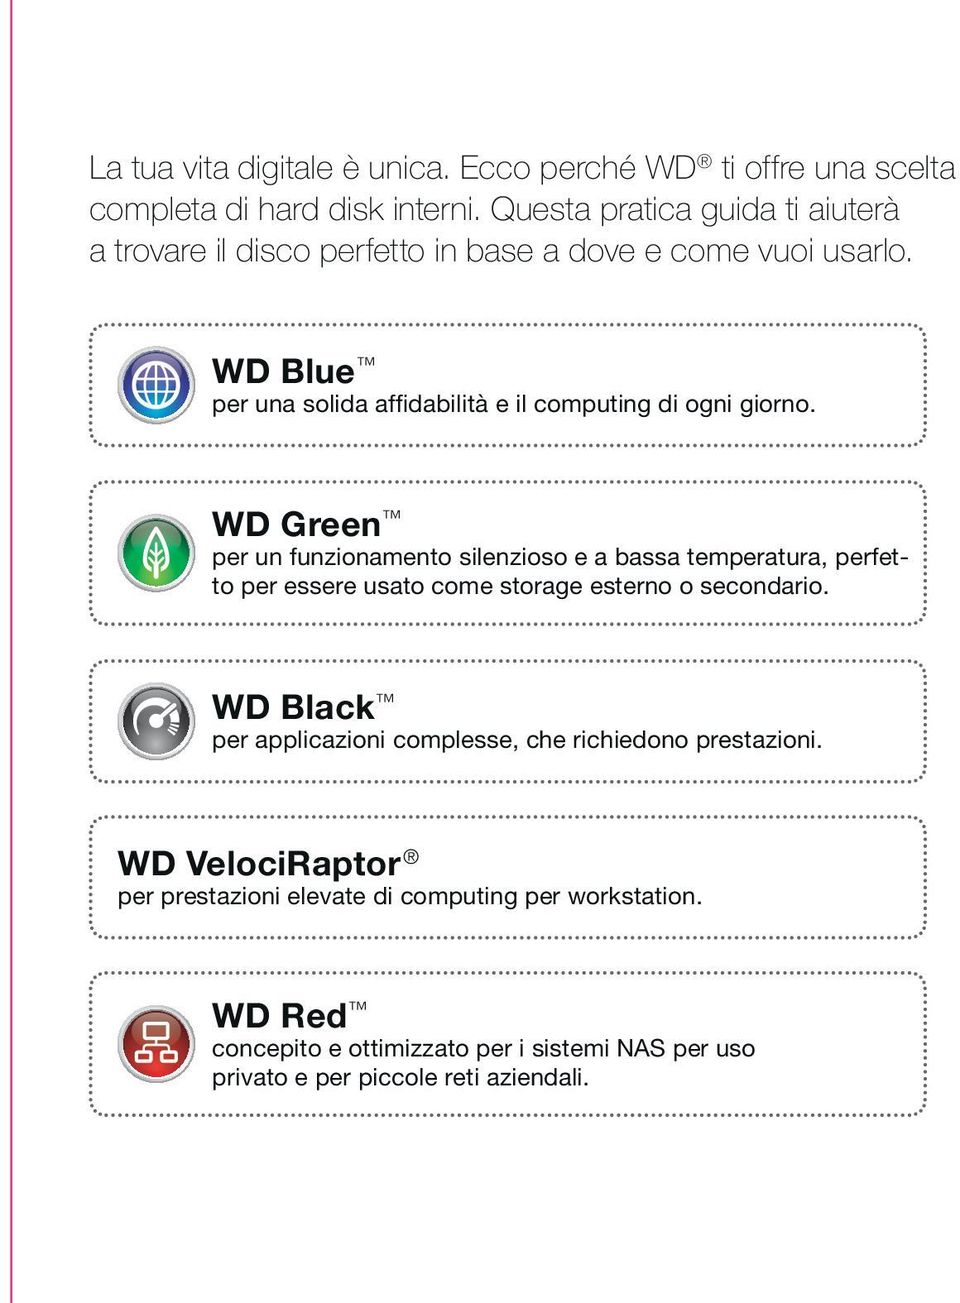 WD Blue per una solida affidabilità e il computing di ogni giorno.